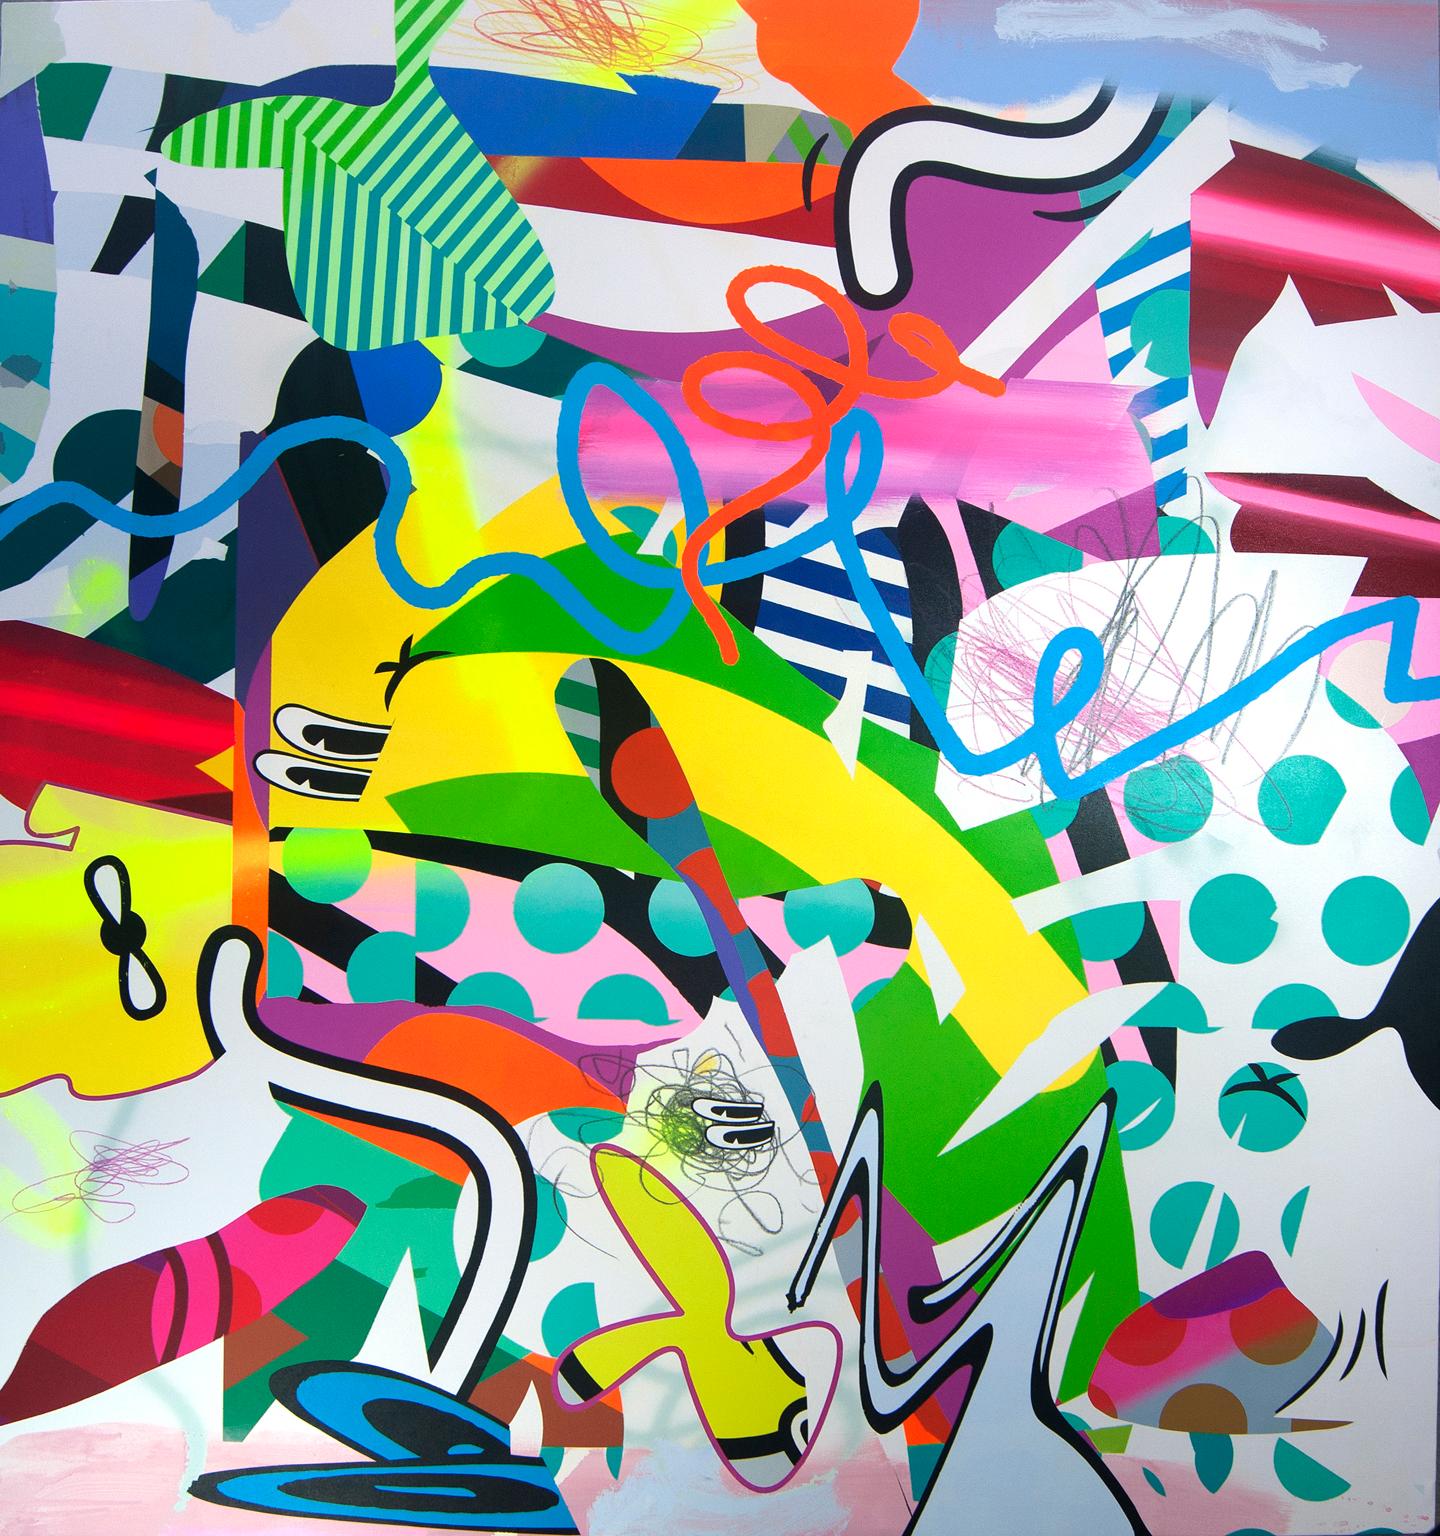 "Voltereta" A Colorful Acrylic on Canvas by Contemporary Artist José Palacios.